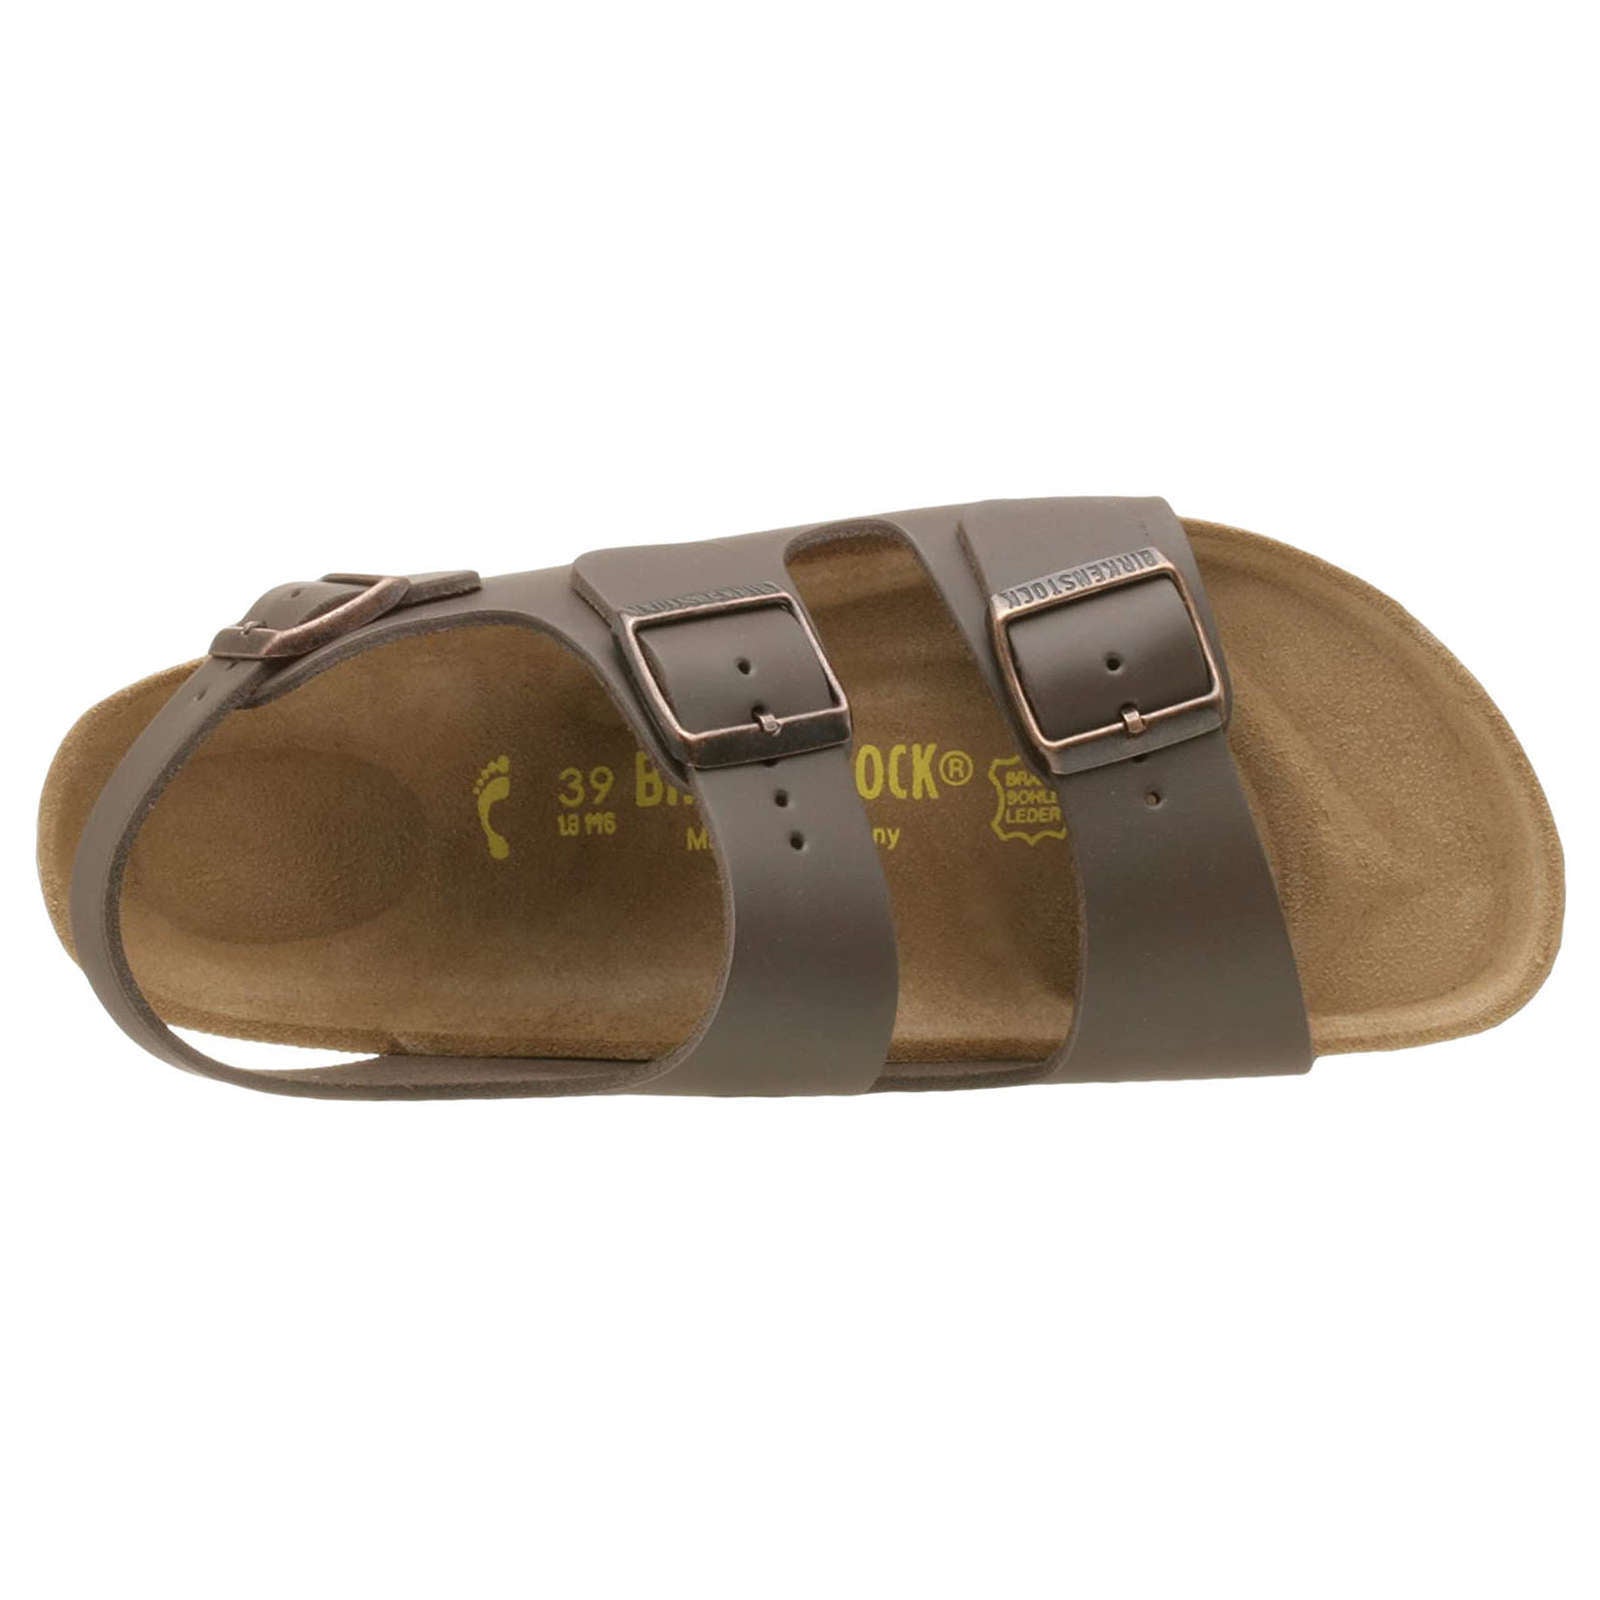 Birkenstock Milano Leather Unisex Sandals#color_dark brown